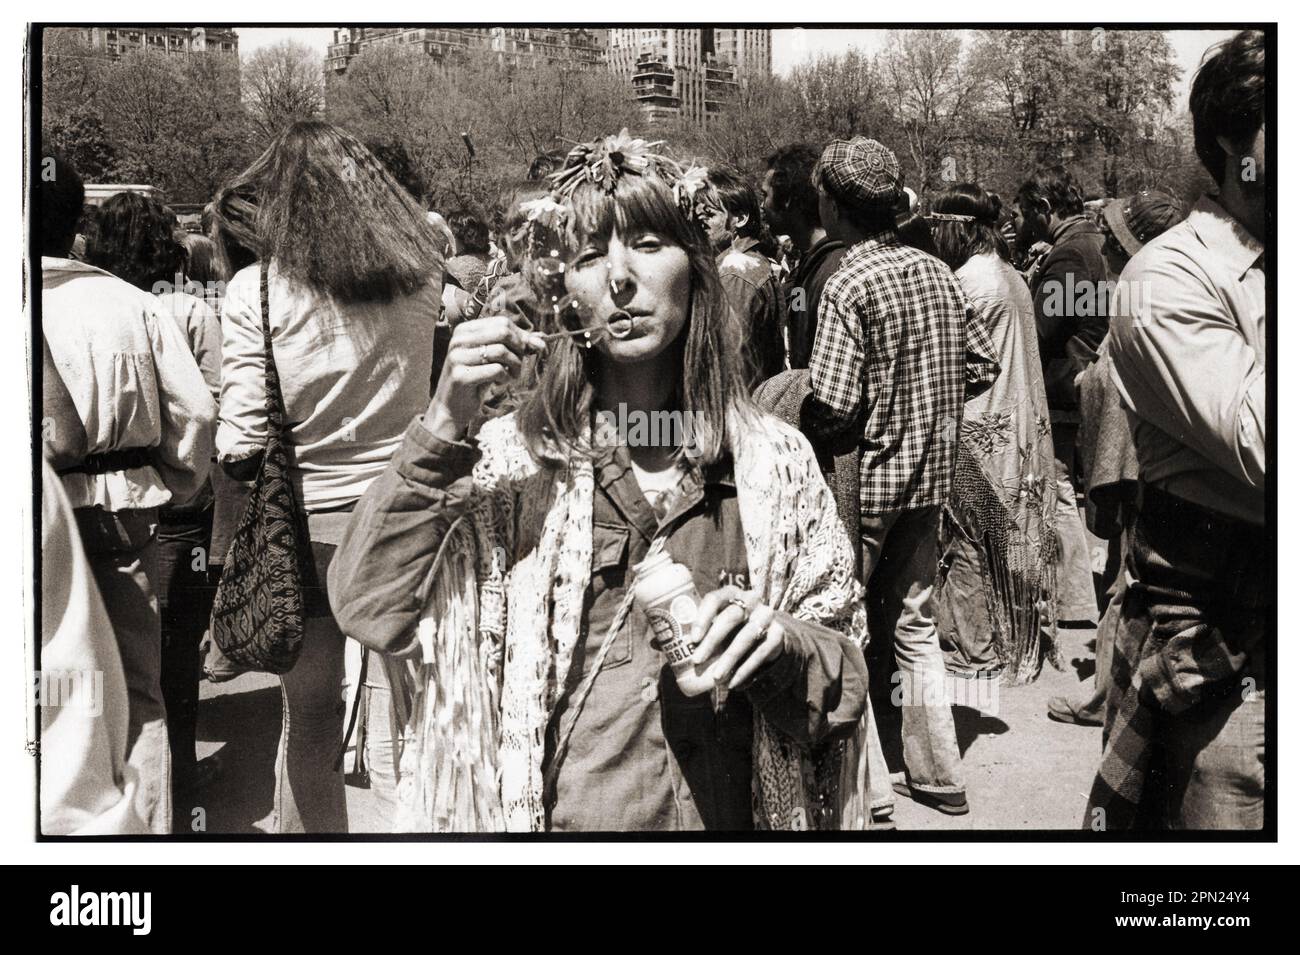 Der Geist der 1960er in der Mitte der 1970er Jahre. Eine attraktive junge Dame bläst bei einer Kundgebung im Washington Square Park um 1974 herum Blasen. Stockfoto